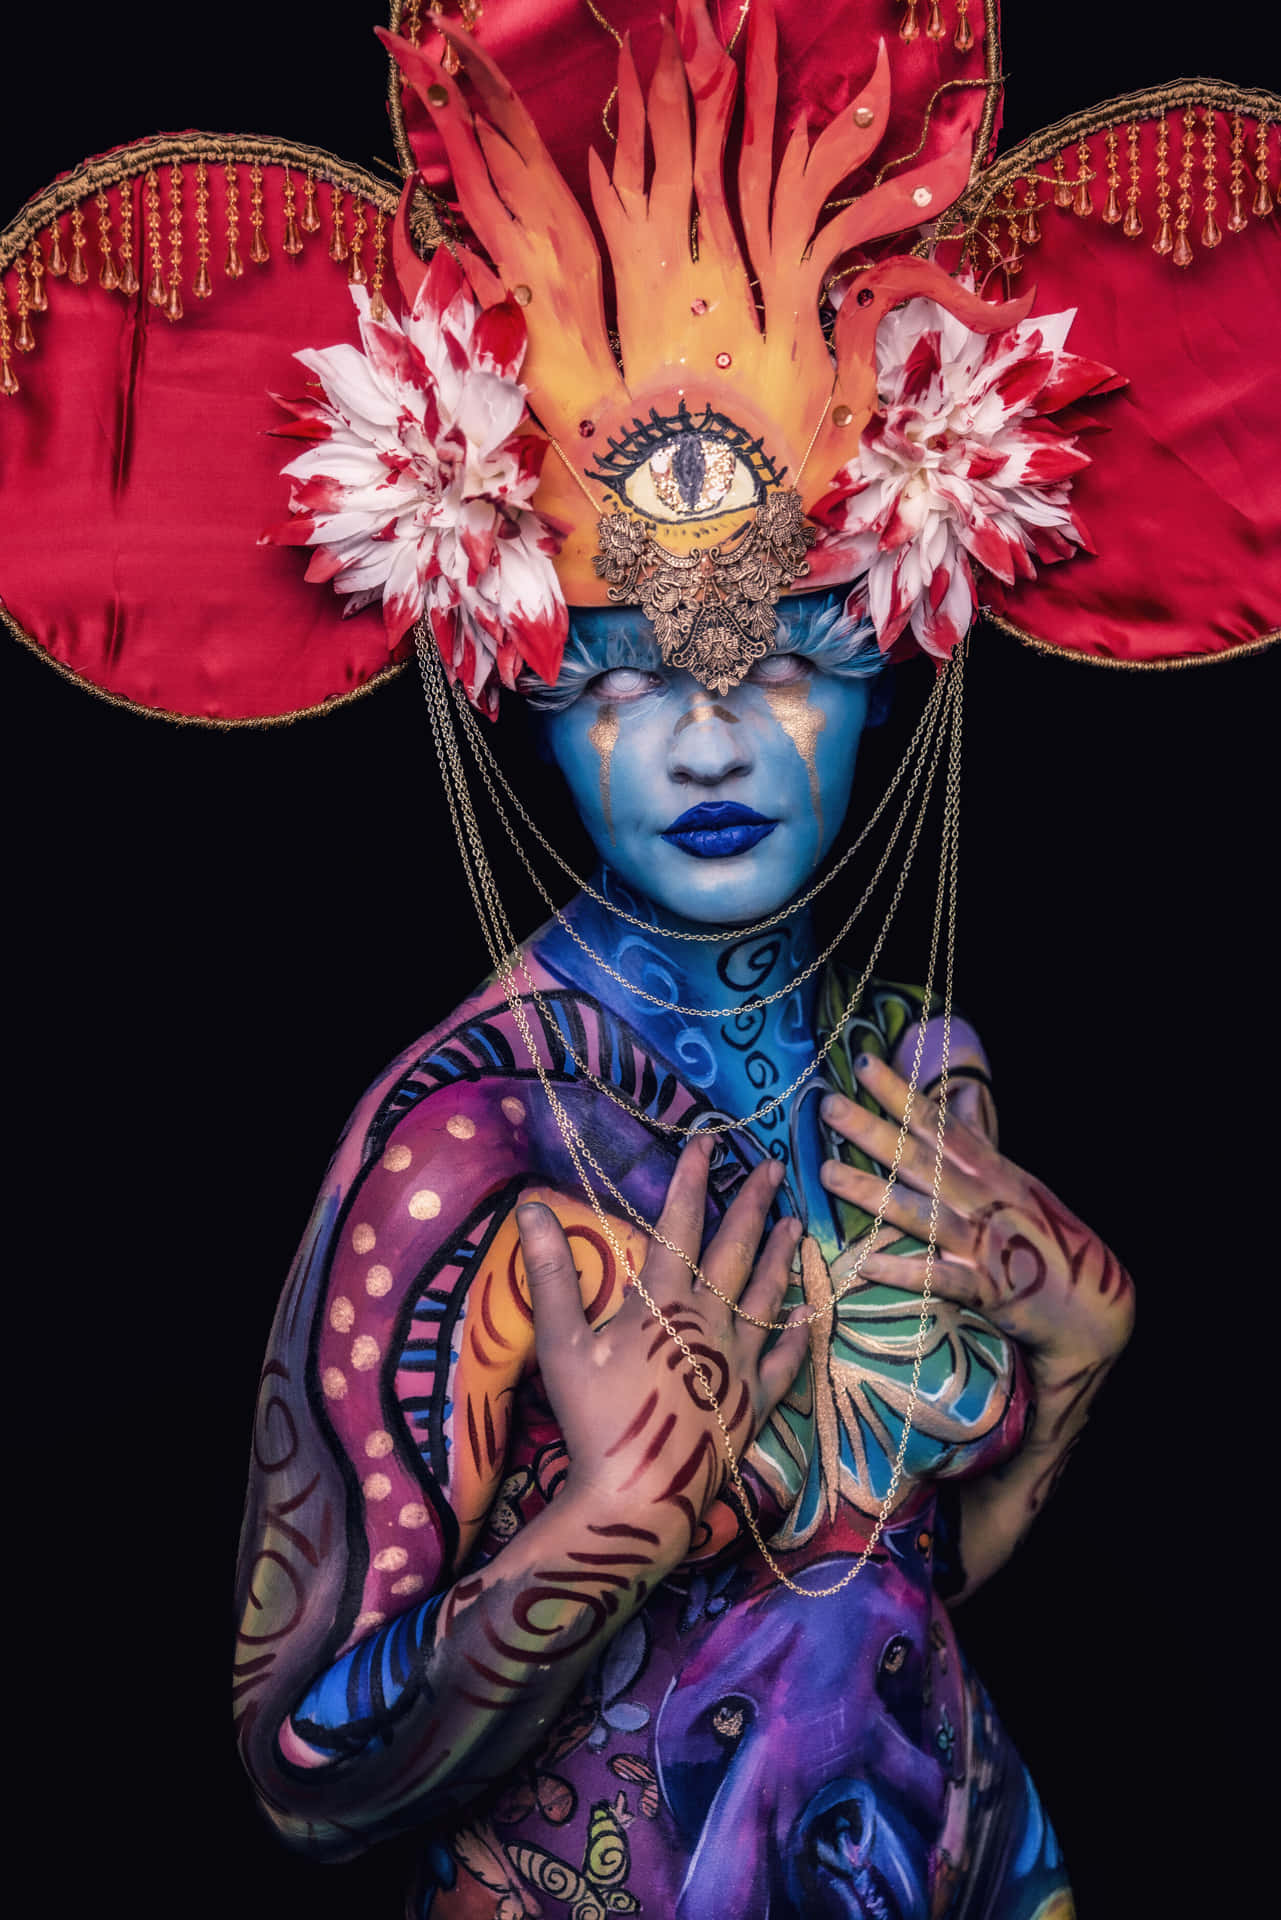 Festivalde Body Painting Colorido Foto De Disfraces Con Ojos En La Tercera Dimensión